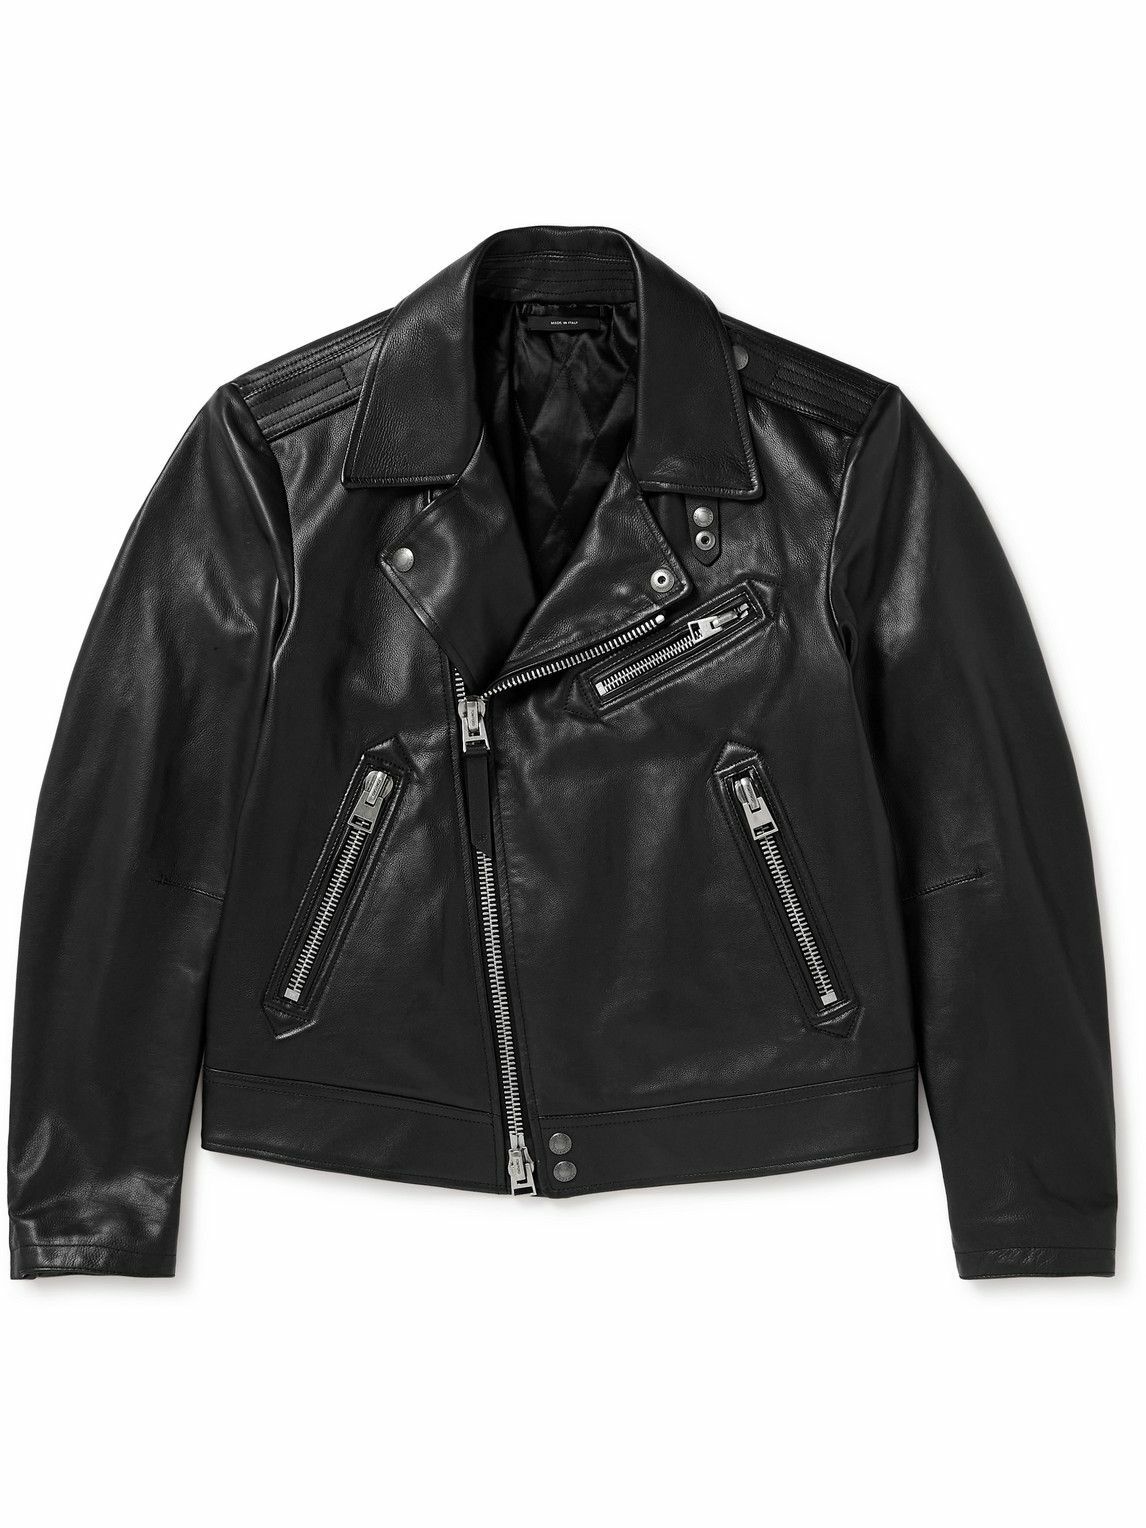 TOM FORD - Full-Grain Leather Biker Jacket - Black TOM FORD